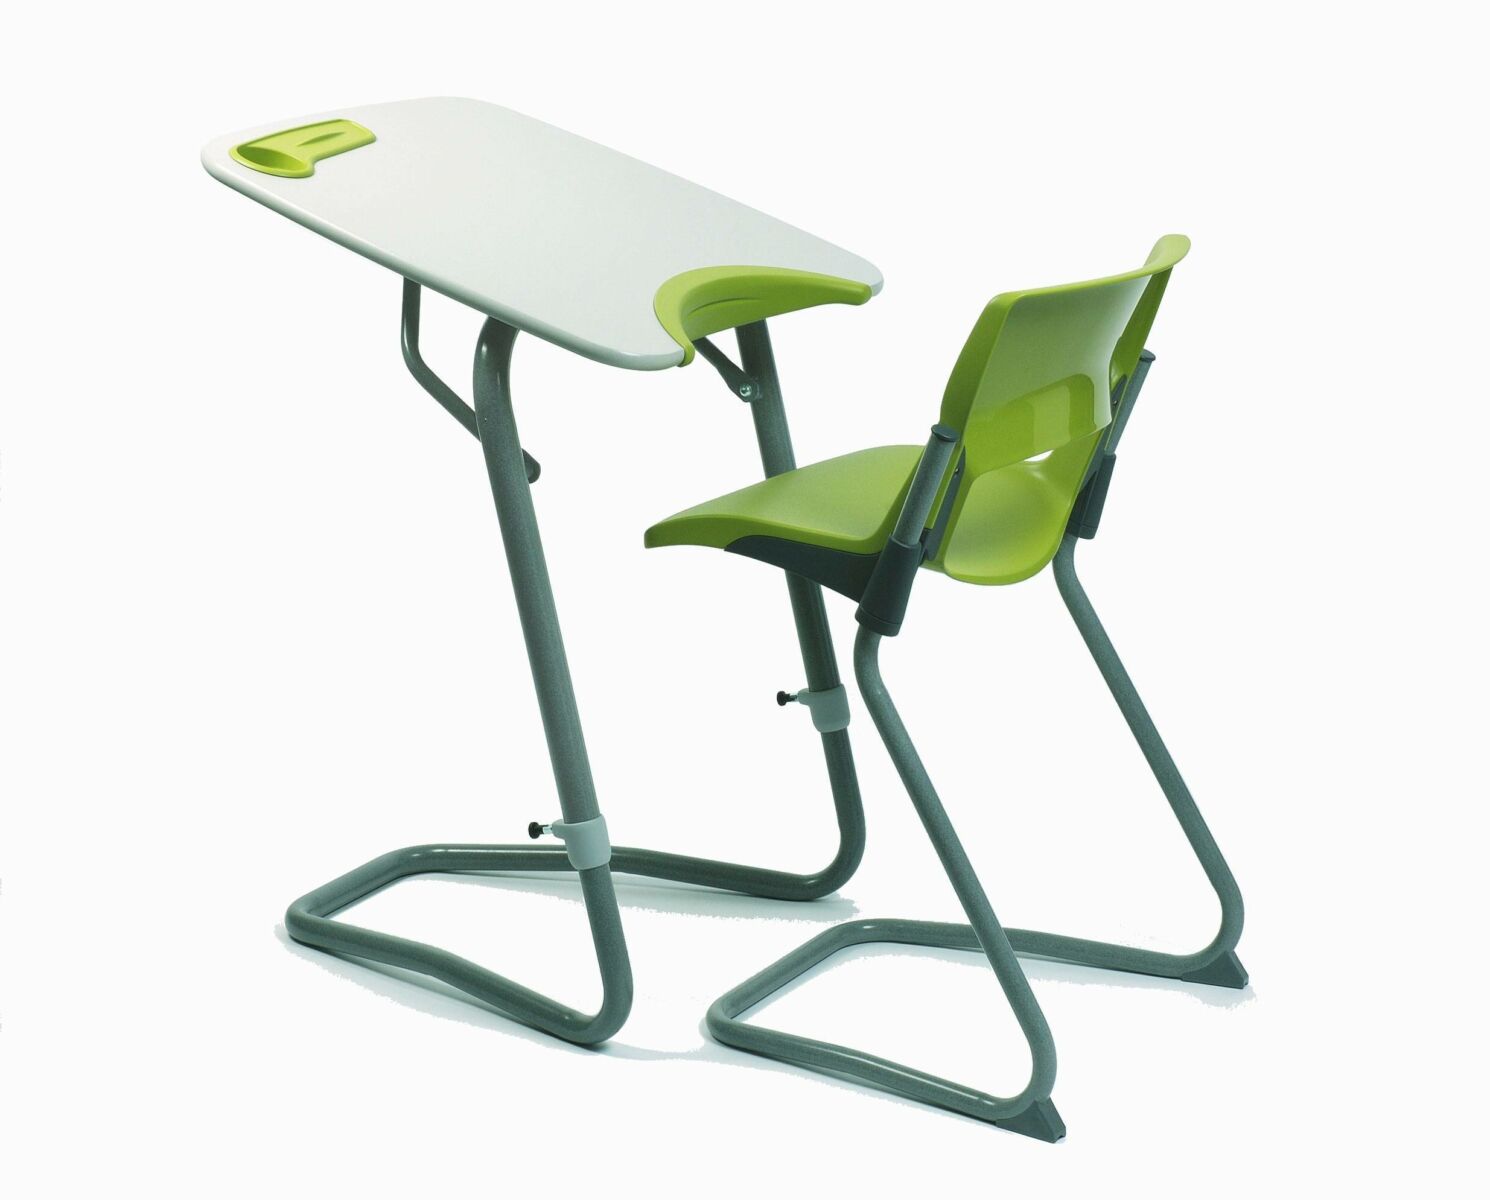 Multipurpose ergonomic furniture design